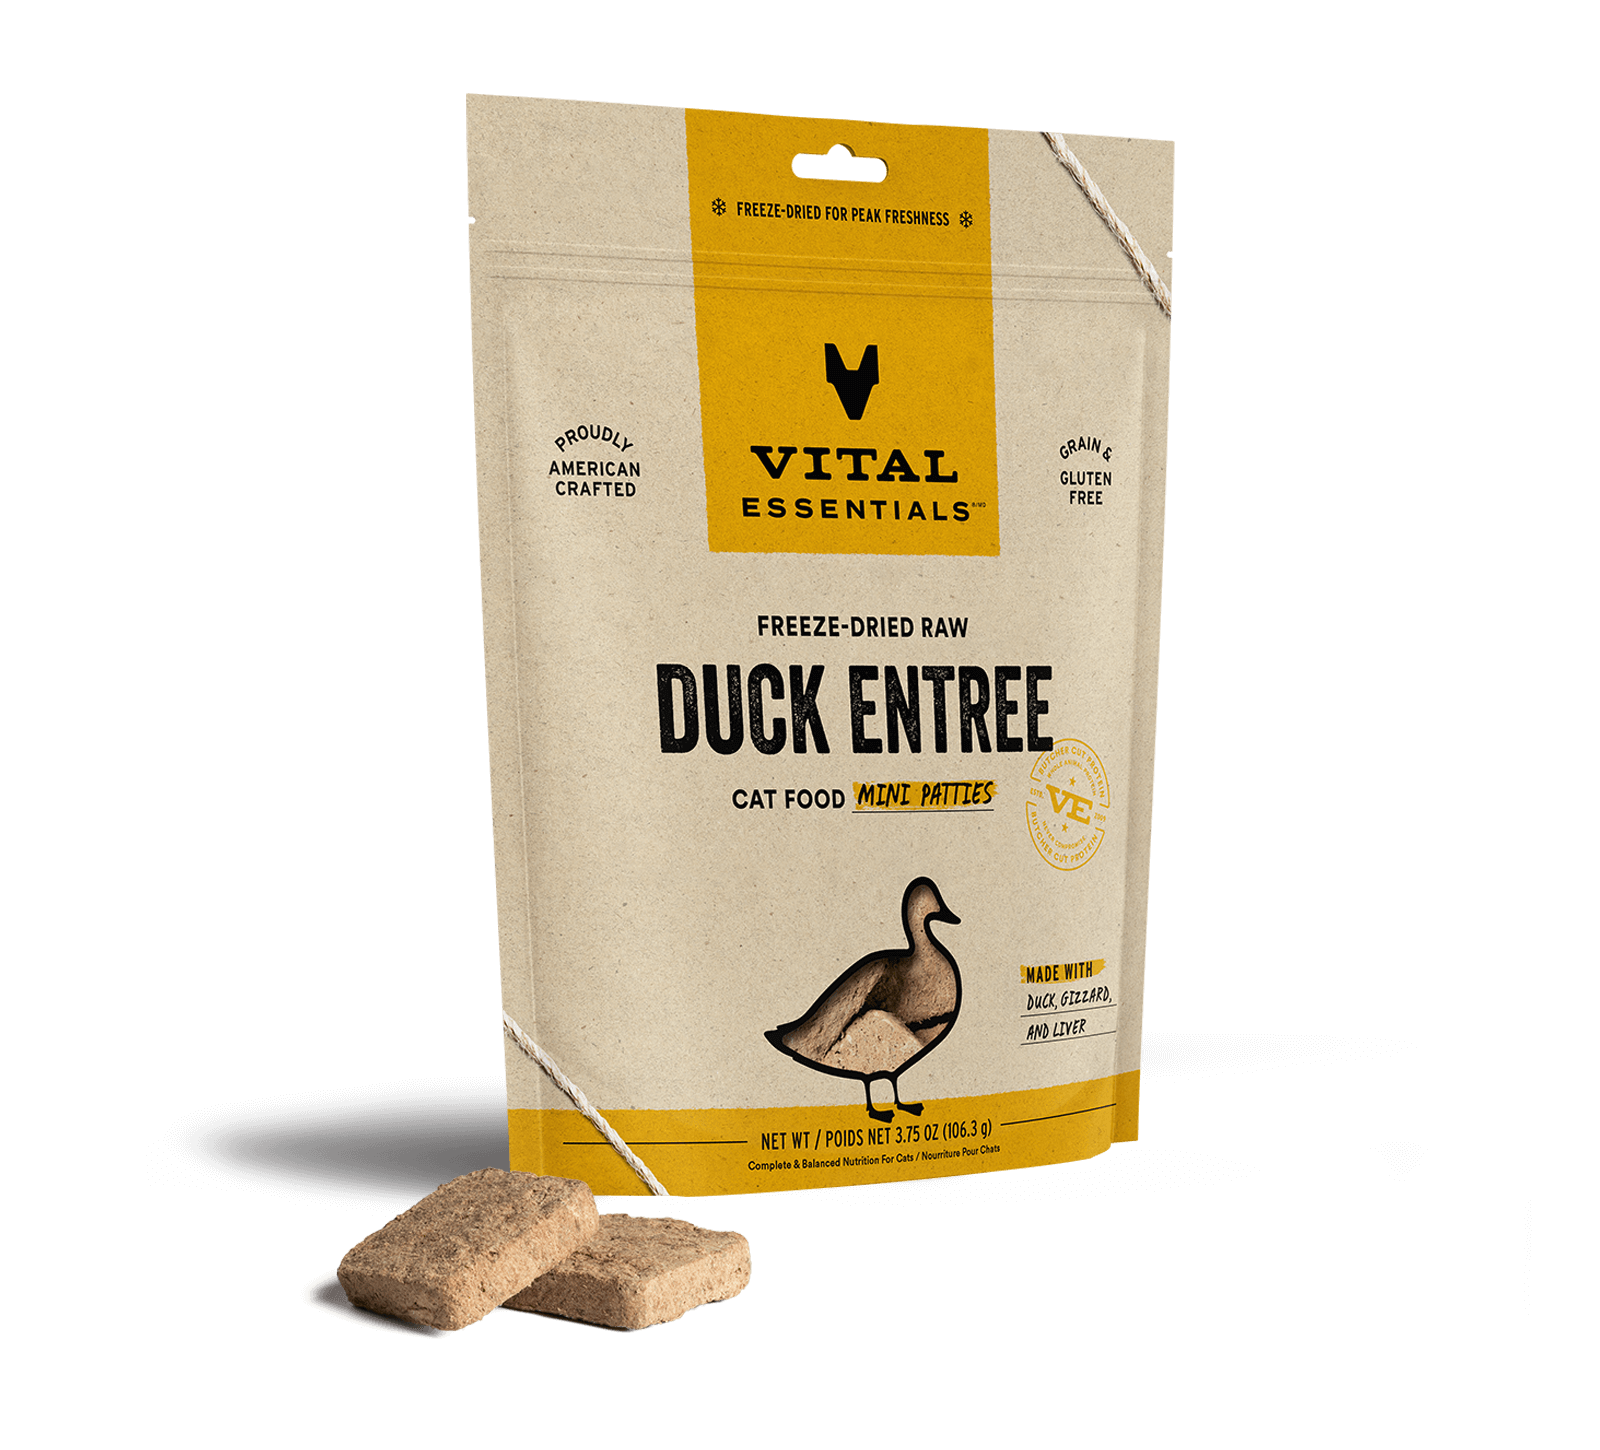 Vital Essentials Freeze-Dried Raw Duck Entree Cat Food Mini Patties, 3.75 oz - Healing/First Aid